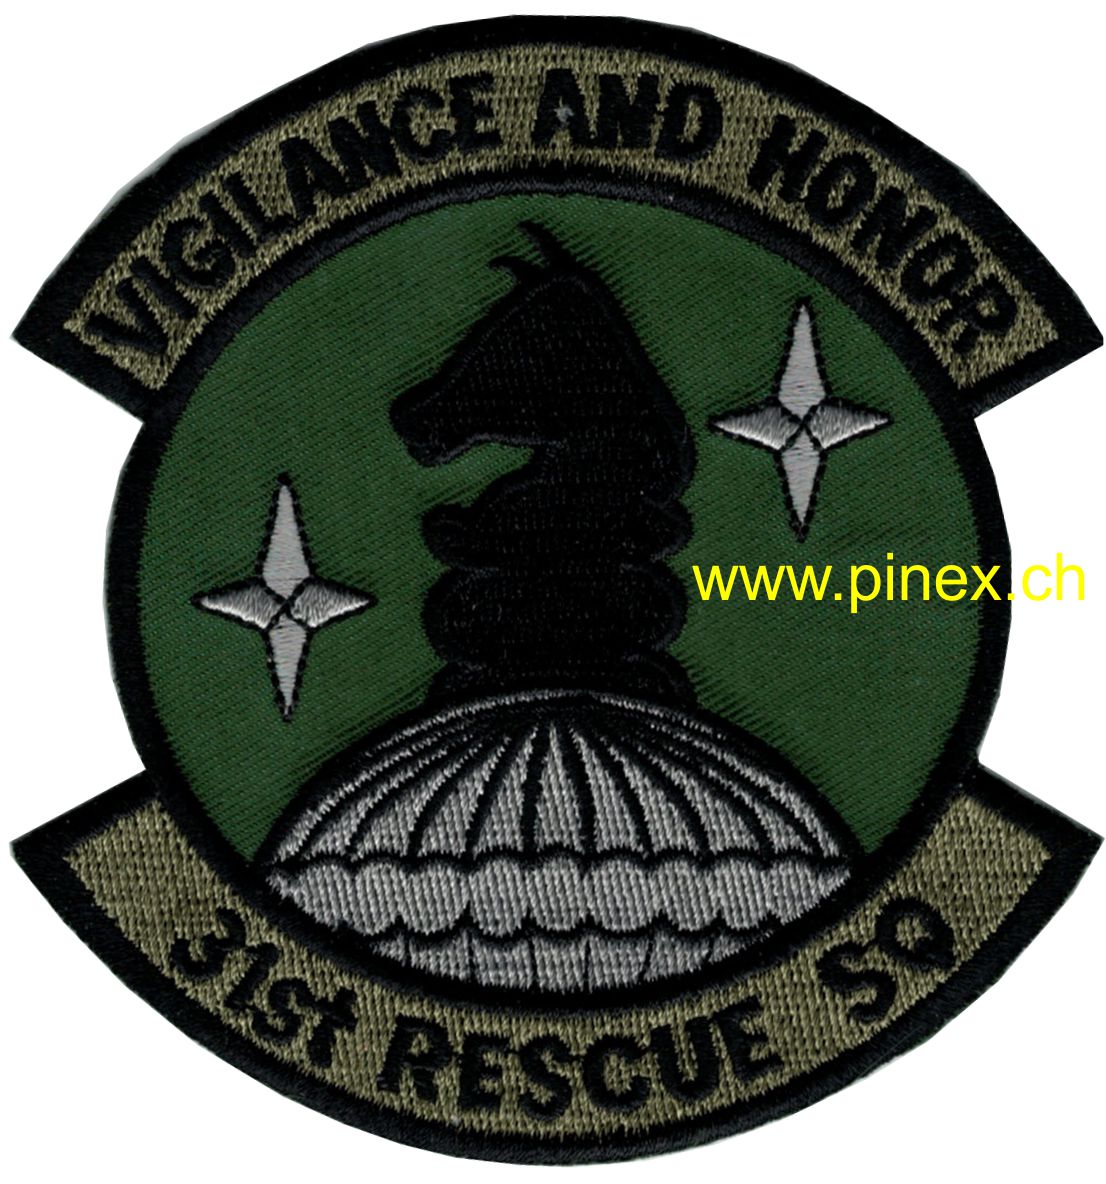 Image de 31st Rescue Squadron USAF Patch "Vigilance and Honor"